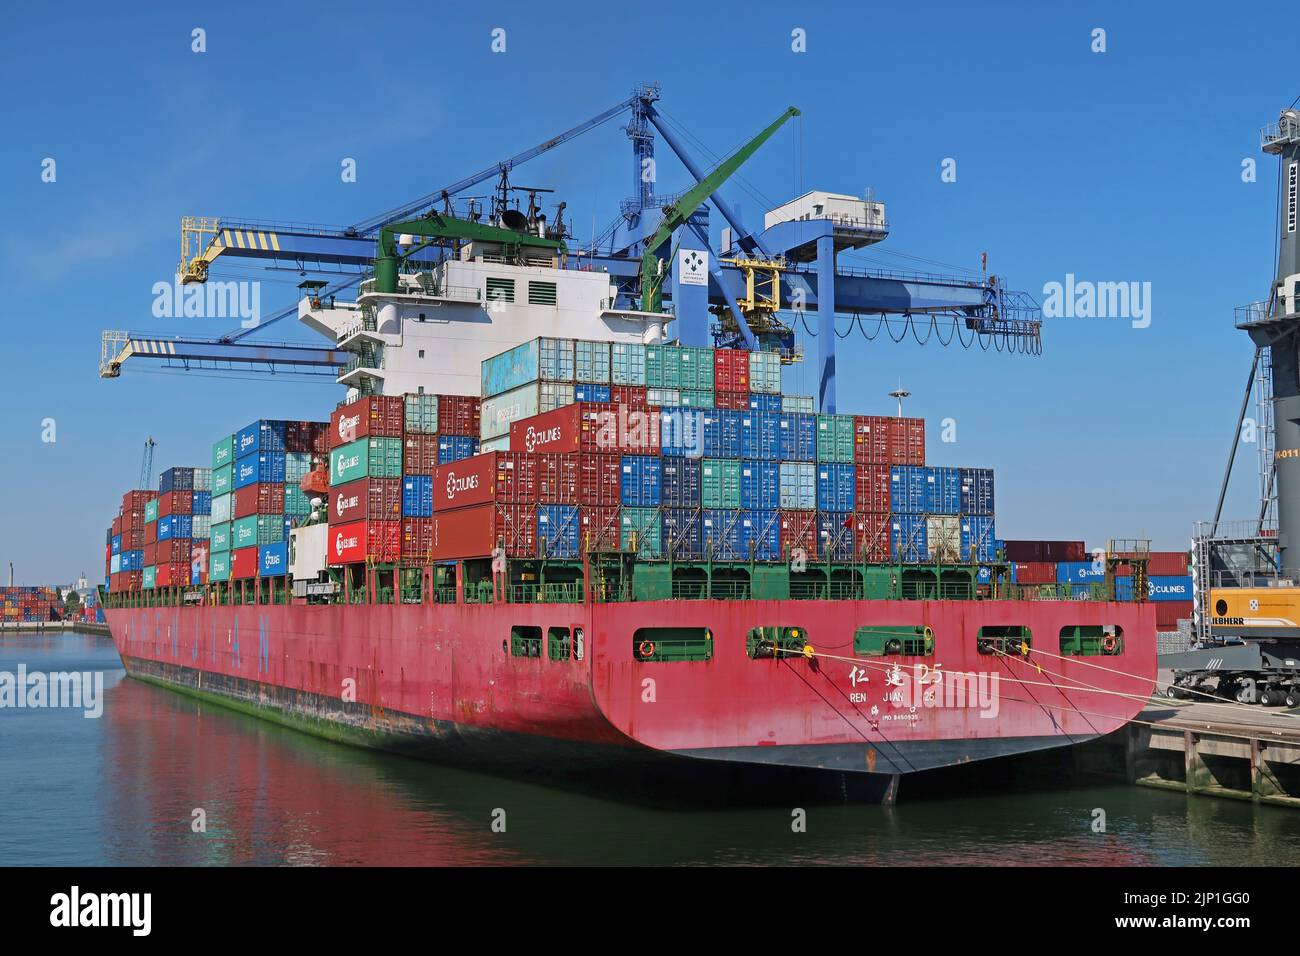 El buque contenedor chino Ren Jian 25 atracó en el puerto de Rotterdam, Países Bajos. Foto de stock